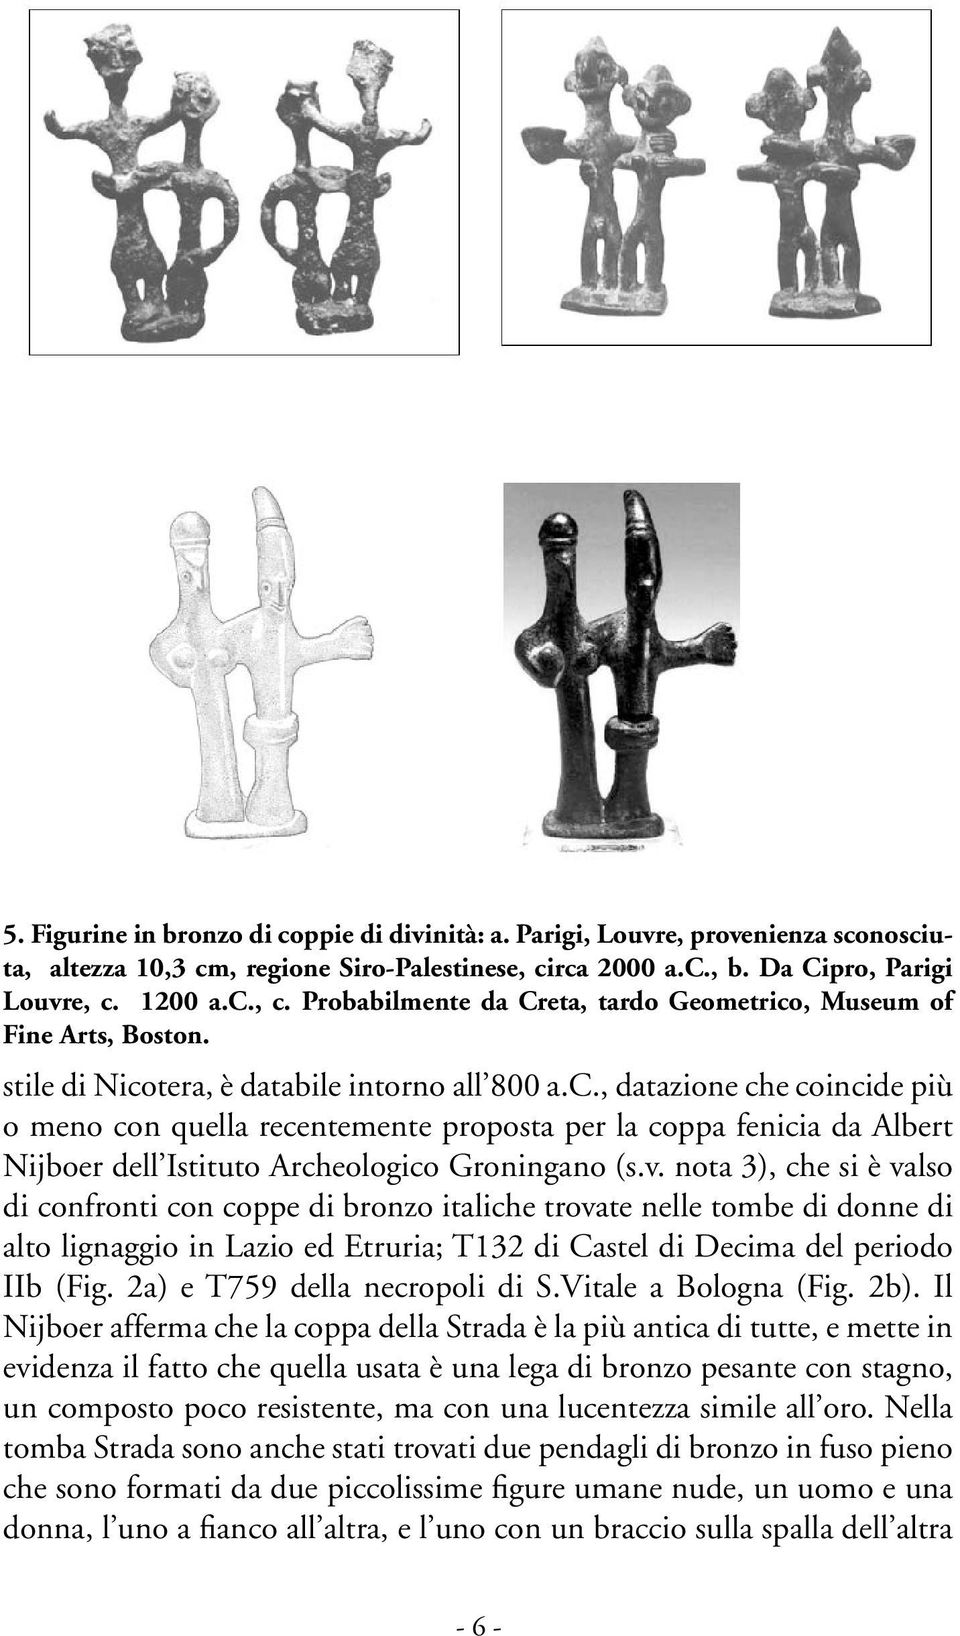 v. nota 3), che si è valso di confronti con coppe di bronzo italiche trovate nelle tombe di donne di alto lignaggio in Lazio ed Etruria; T132 di Castel di Decima del periodo IIb (Fig.